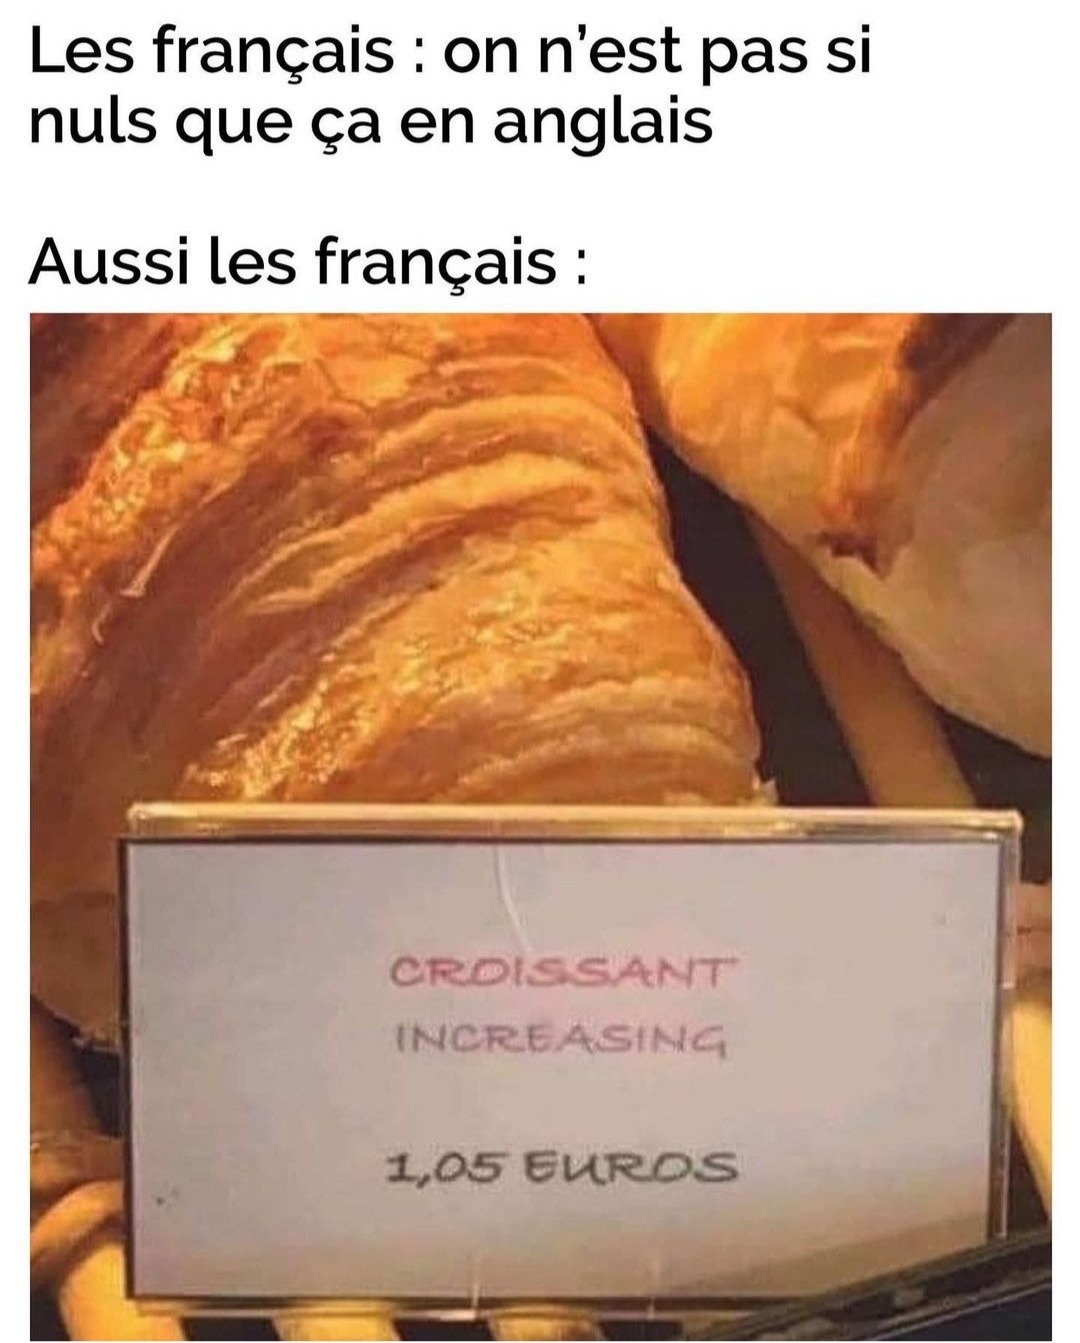 Croissant au fromage - meme